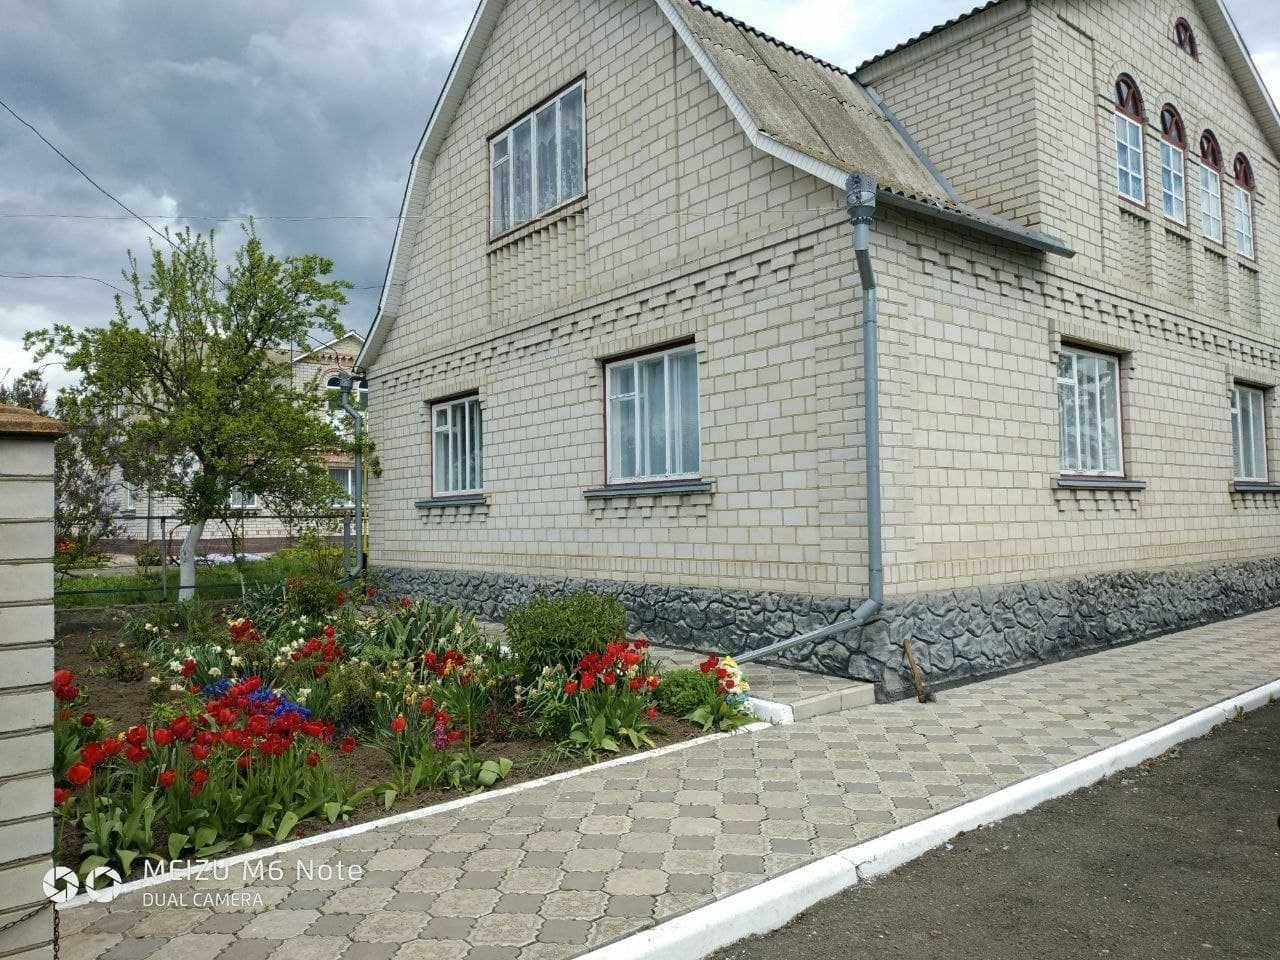 Продам будинок в смт Ружин, Житомирська область